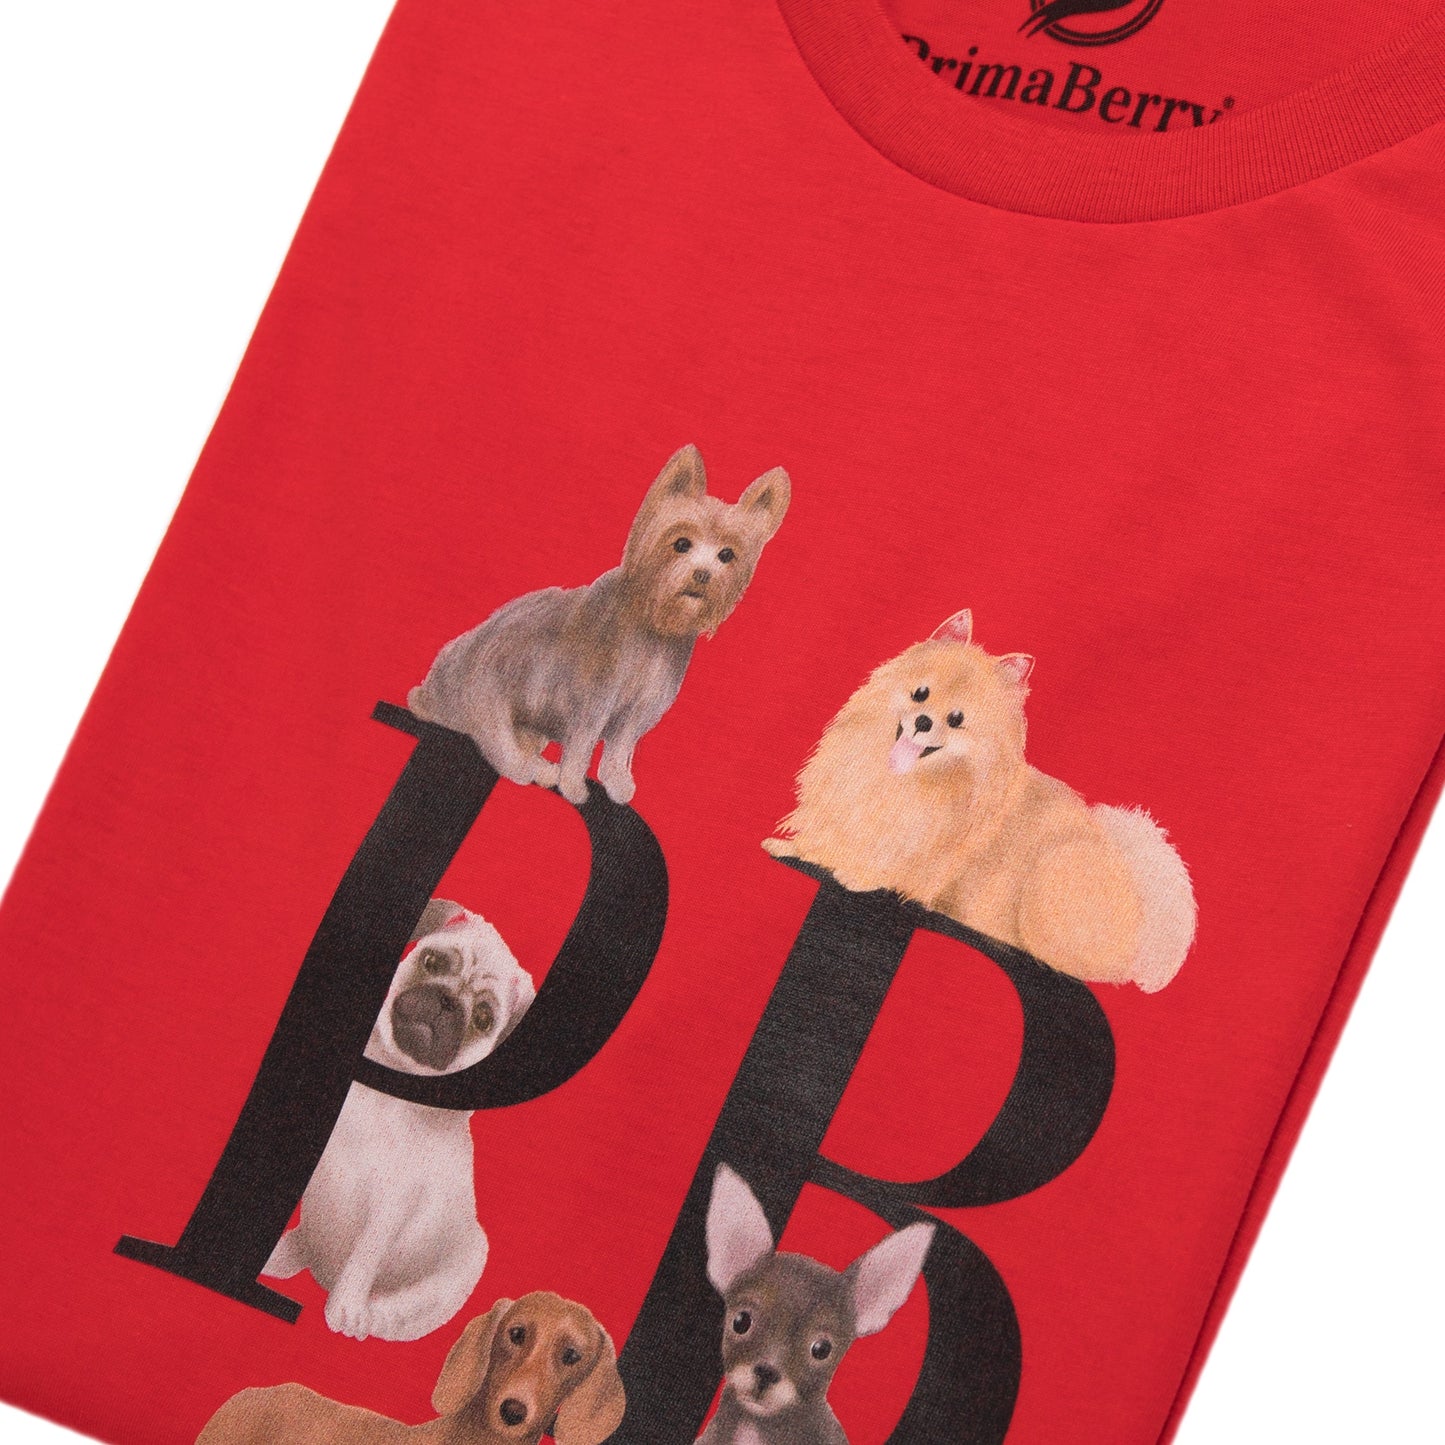 Camiseta de algodão orgânico Dogmania: camiseta elegante e sustentável para amantes de cães